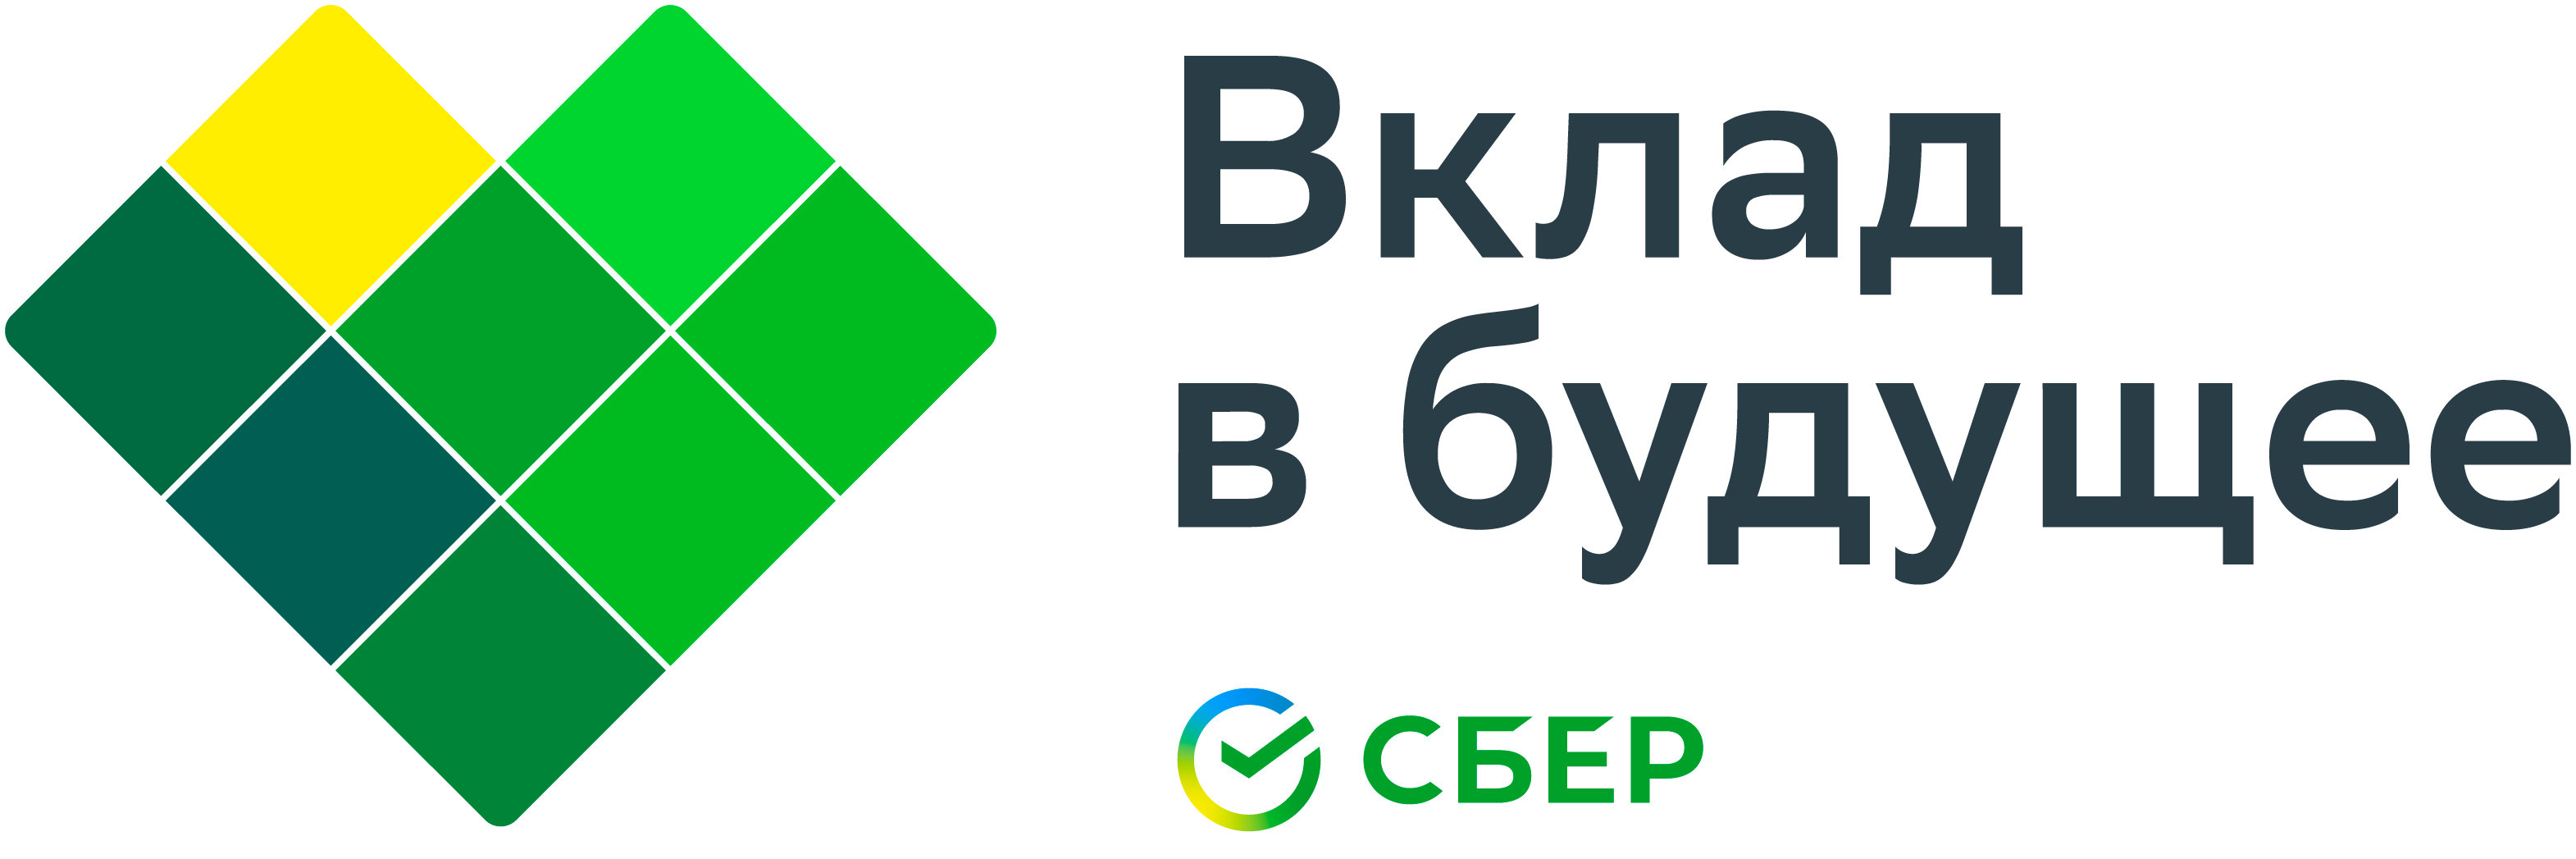 логотип БФ "Вклад в будущее" Сбербанка